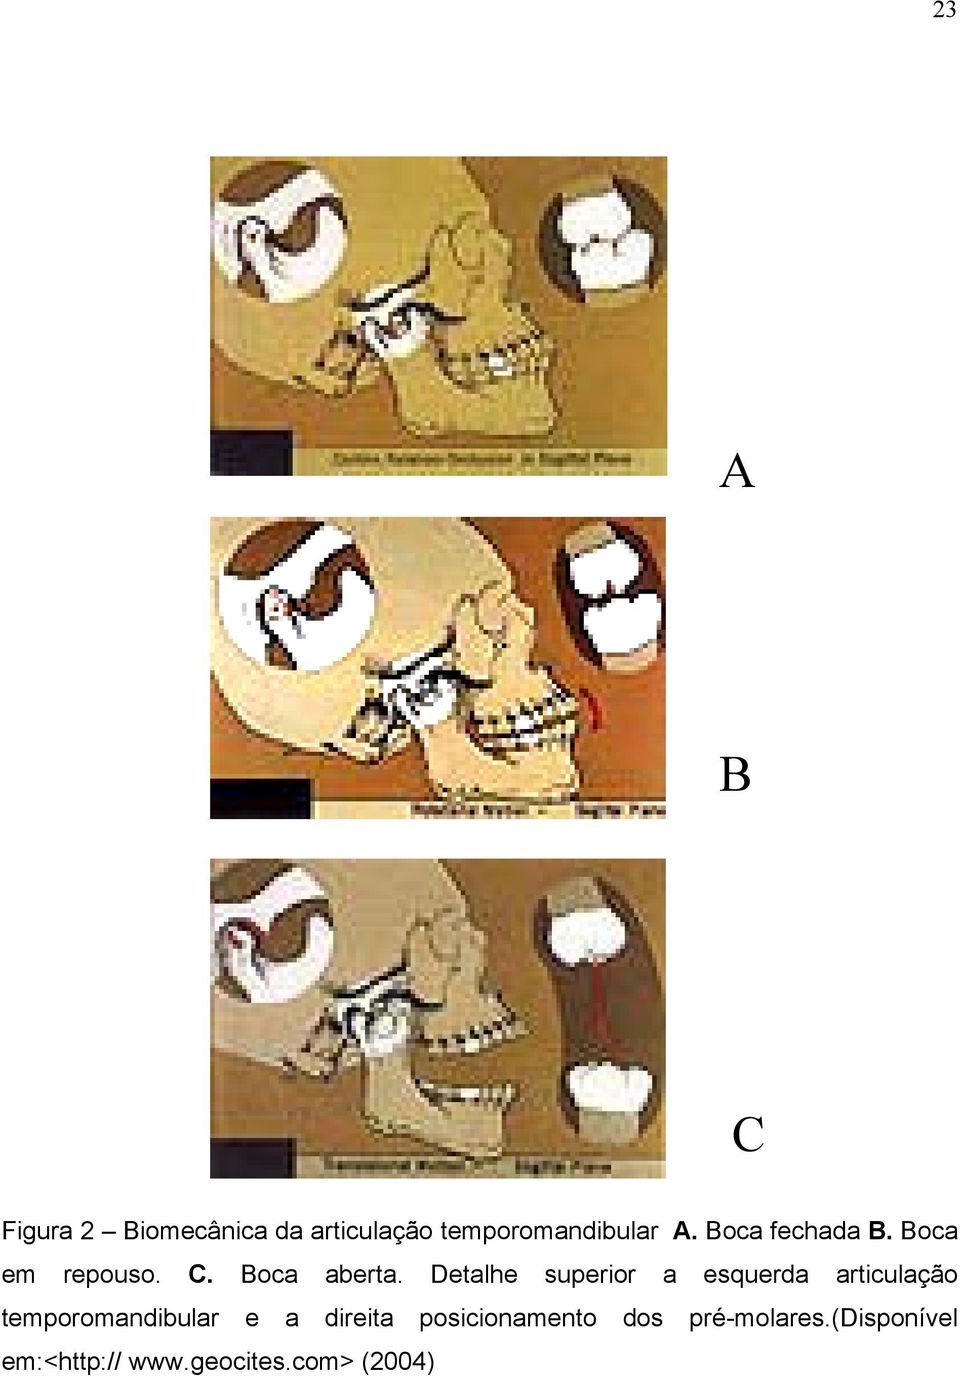 Detalhe superior a esquerda articulação temporomandibular e a